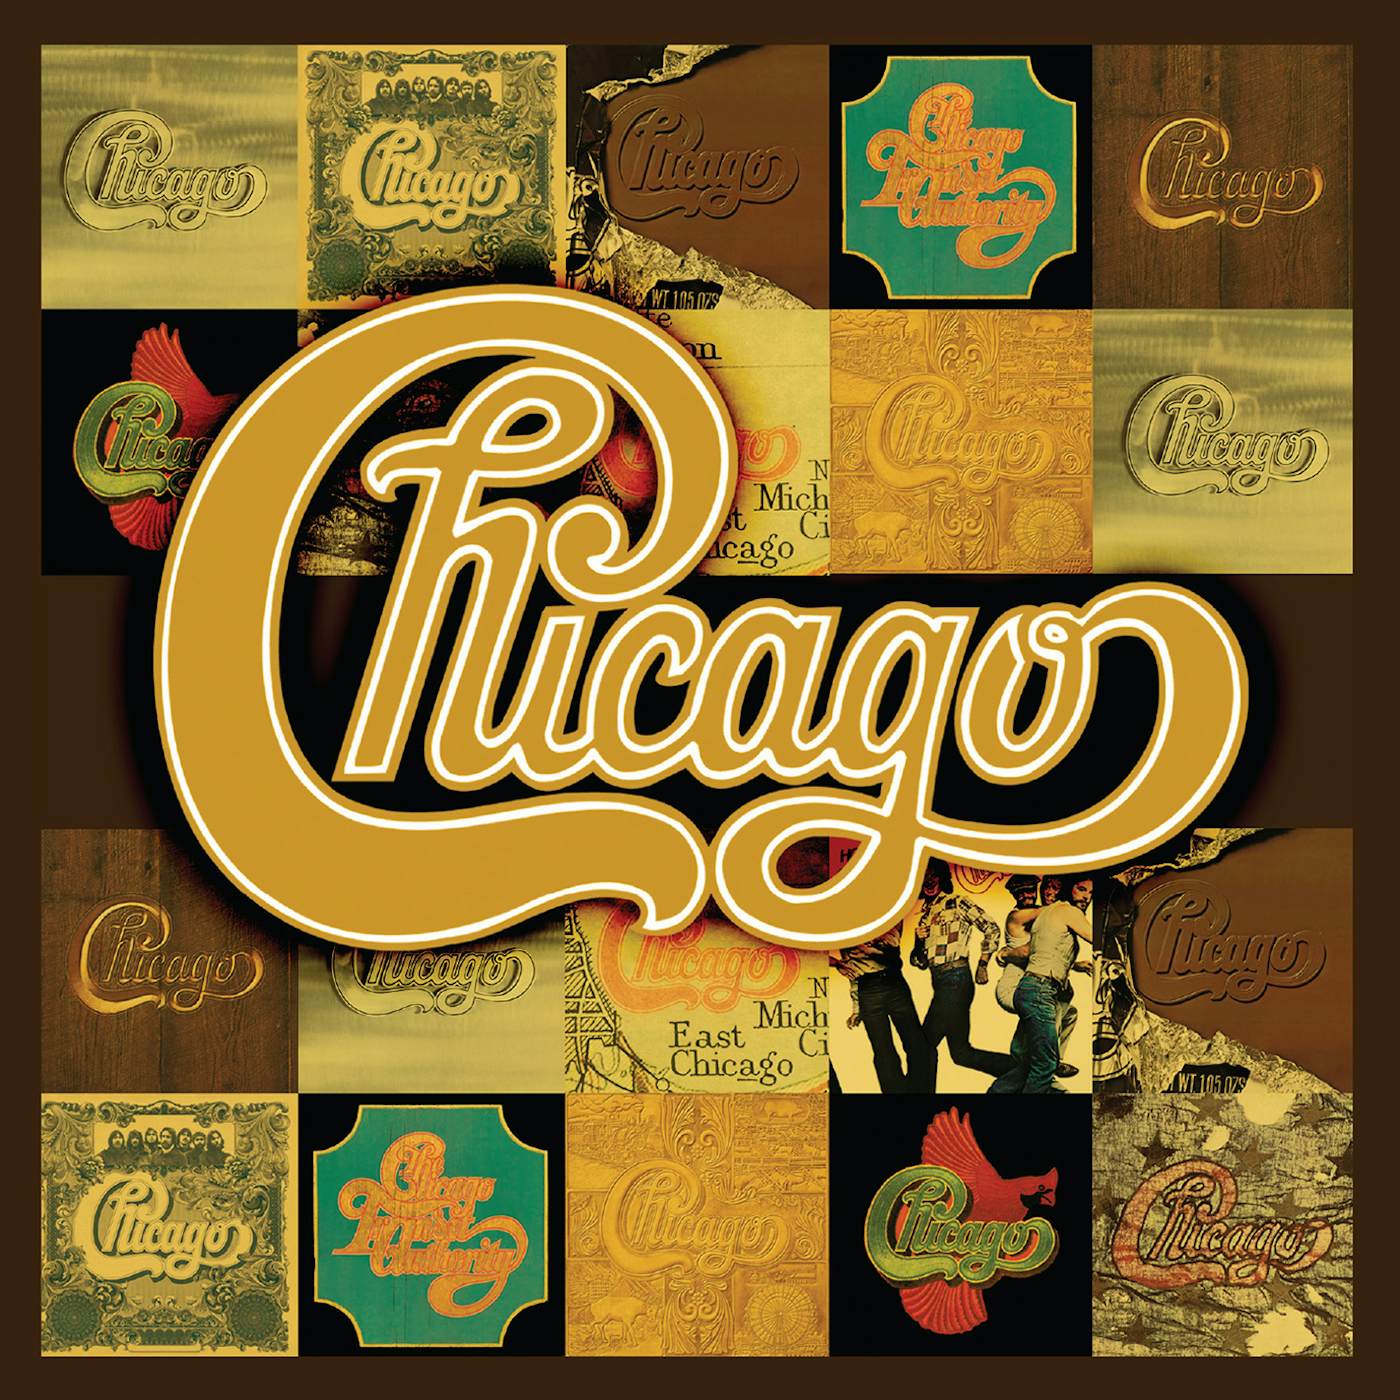 Chicago STUDIO ALBUMS 1: 1969-1978 CD